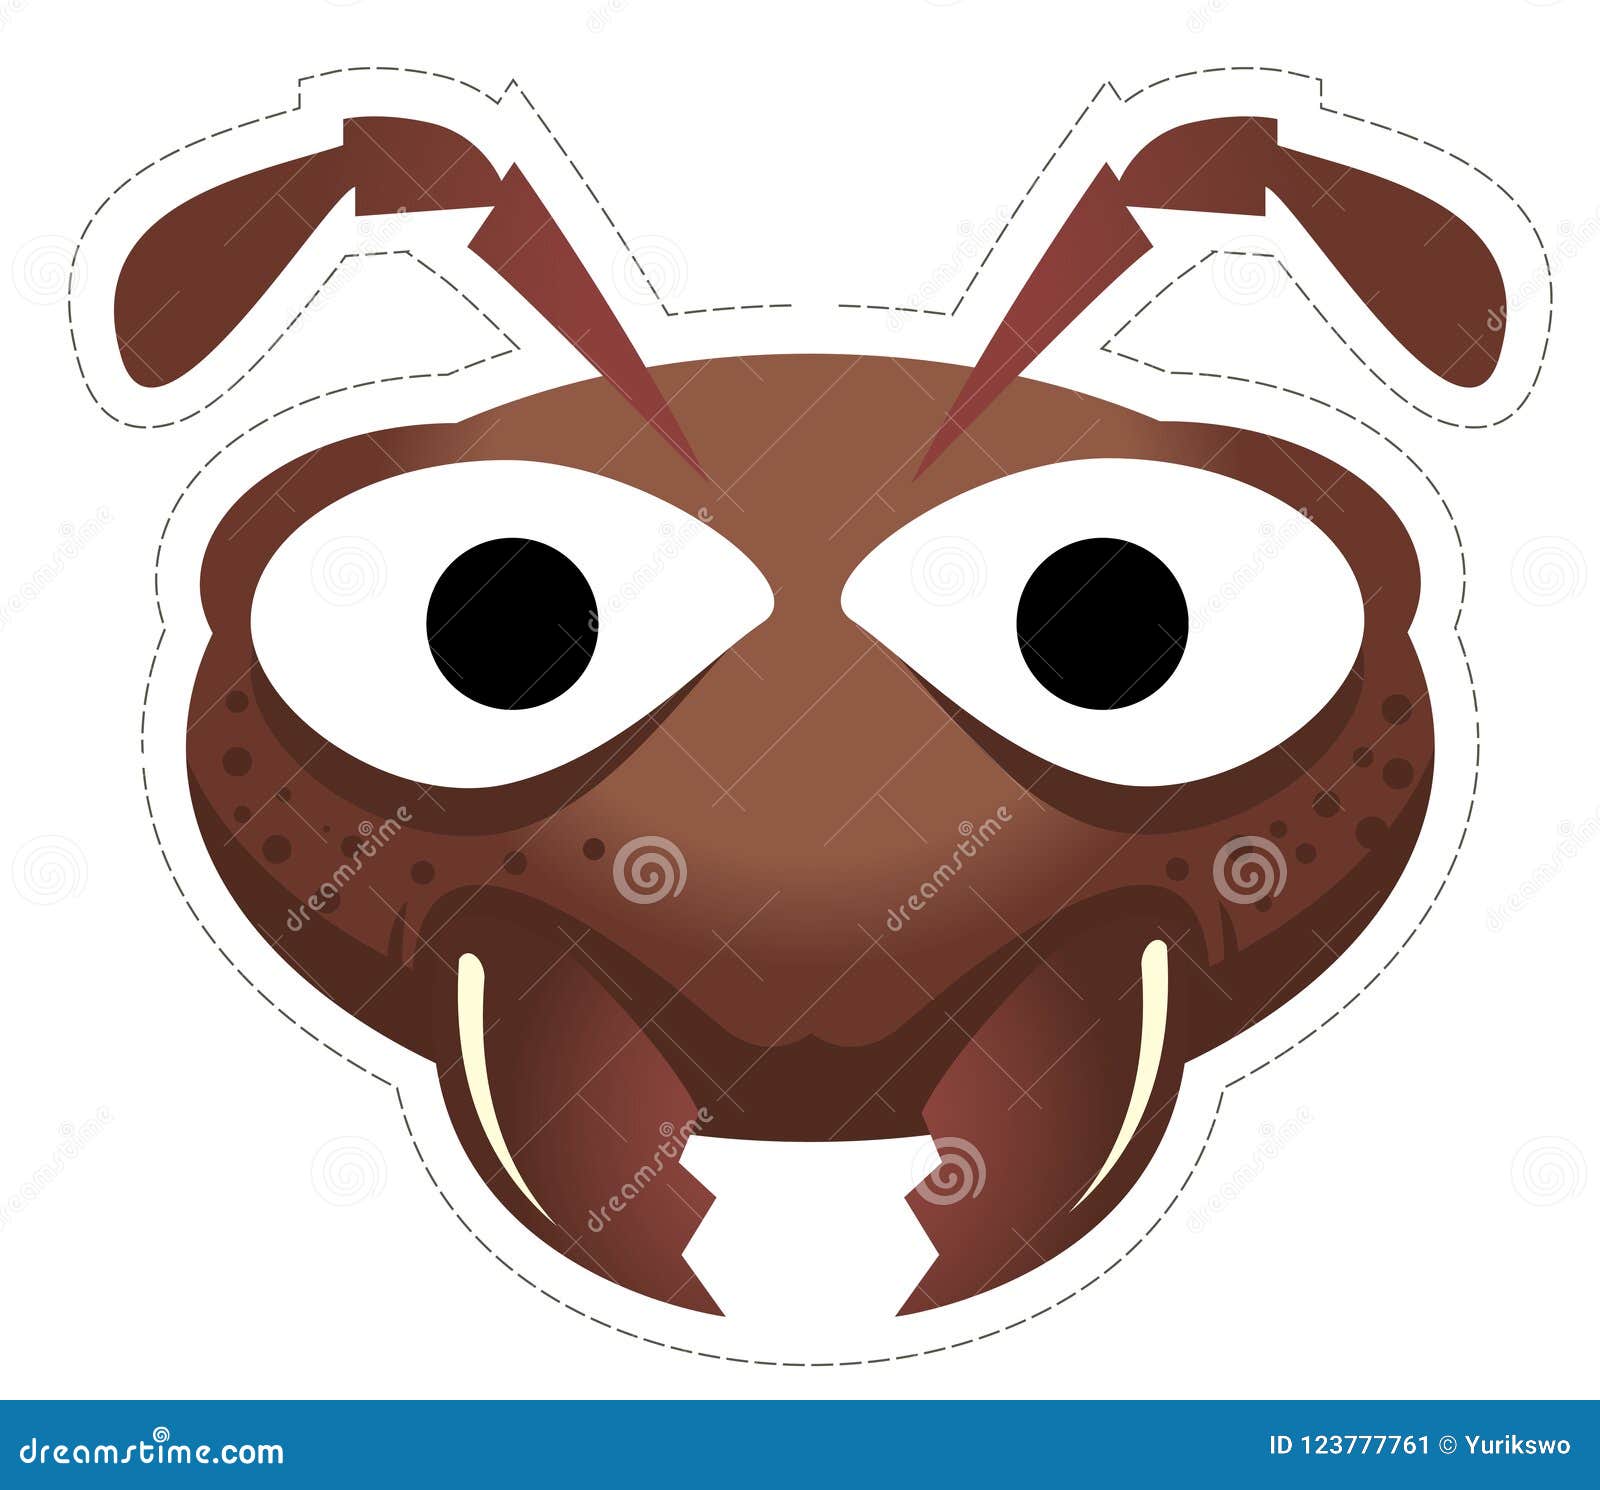 Маска жука на голову. Маска муравья. Маска таракана. Маска таракана для детей. Маска муравья на голову.